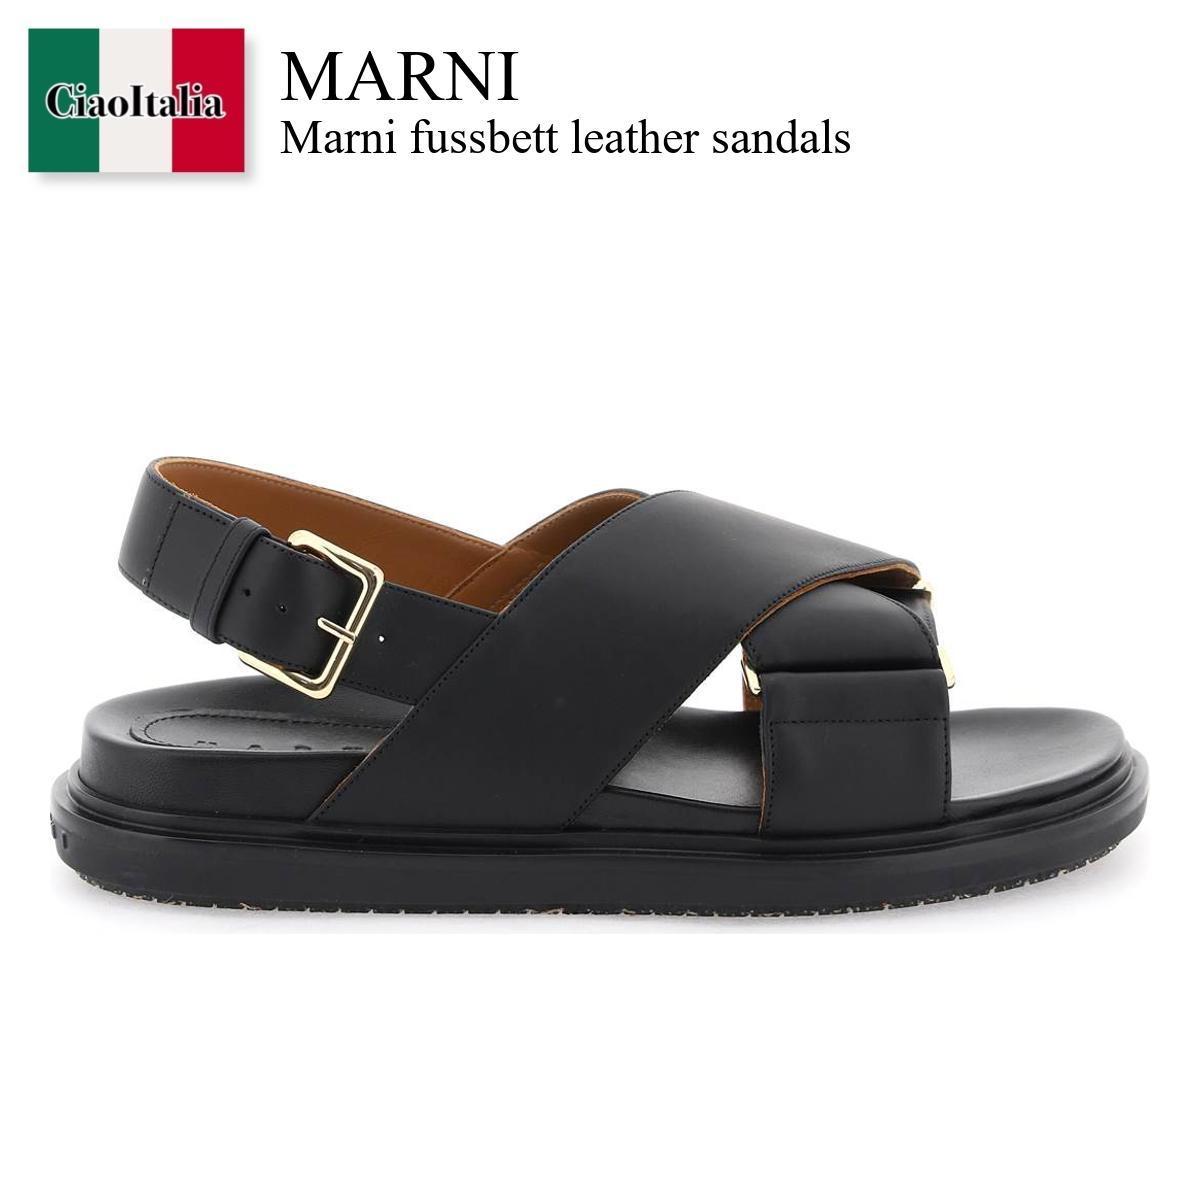 マルニ / Marni Fussbett Leather Sandals / FBM